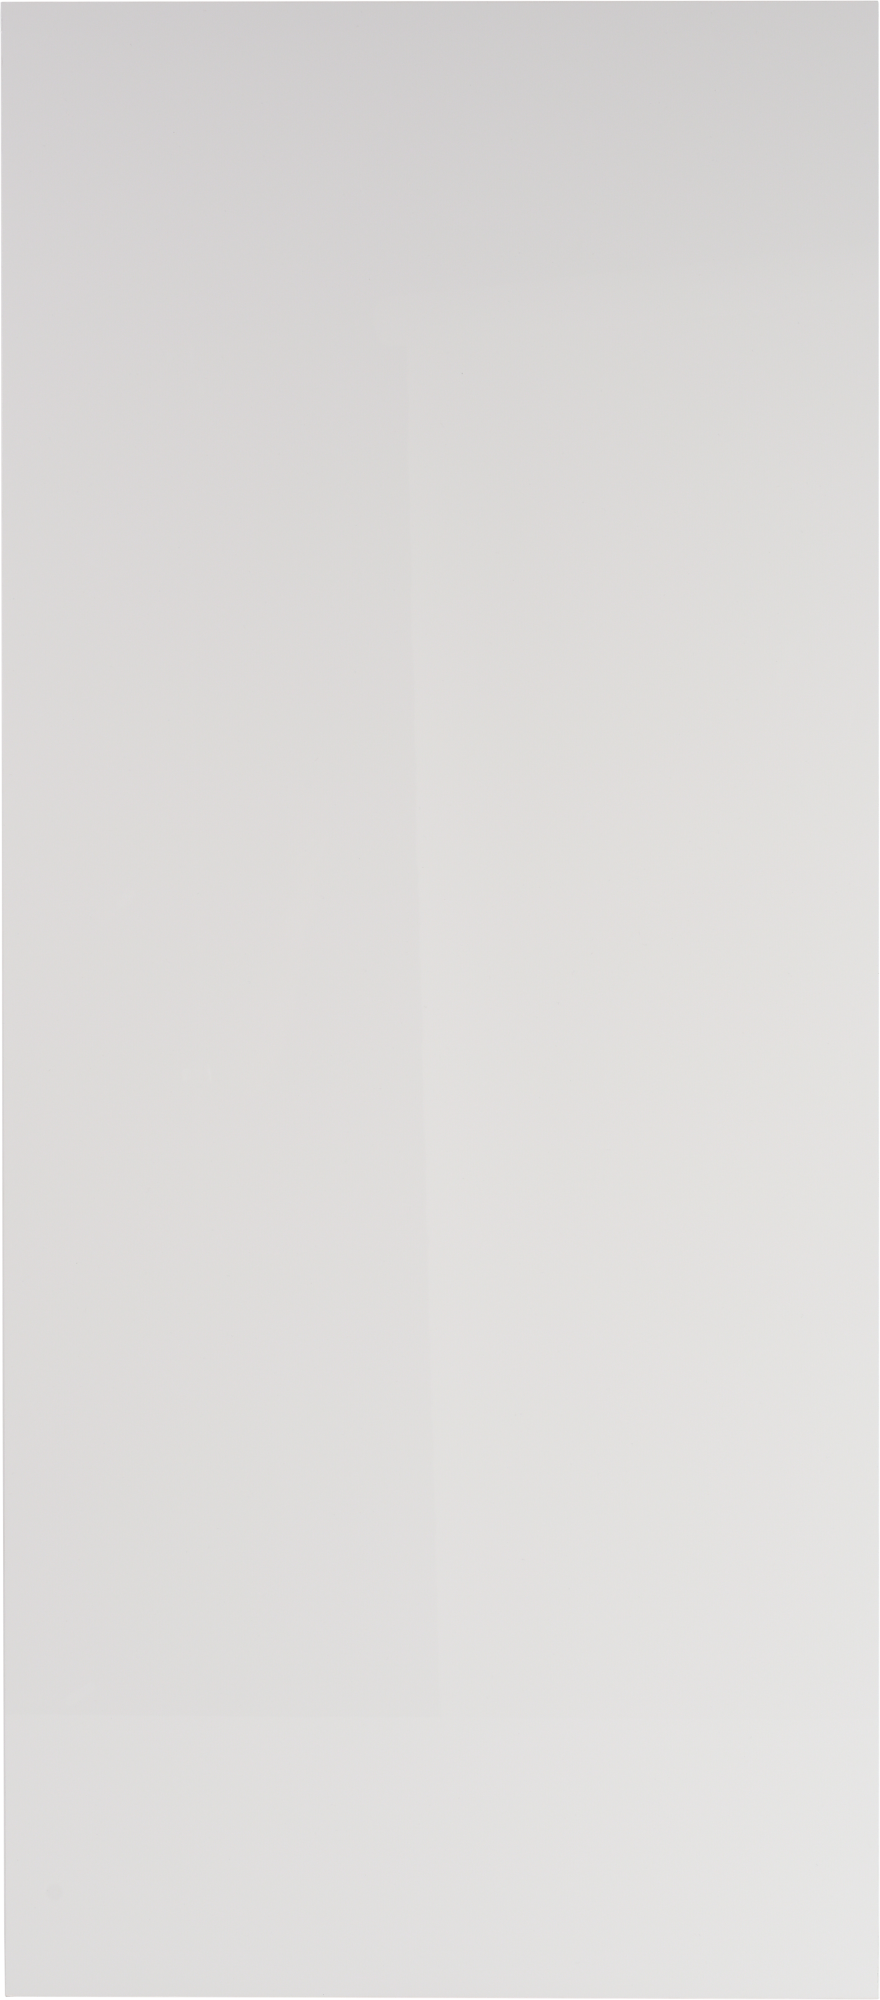 Puerta para mueble de cocina atenas blanco brillo h 137.6 x l 60 cm